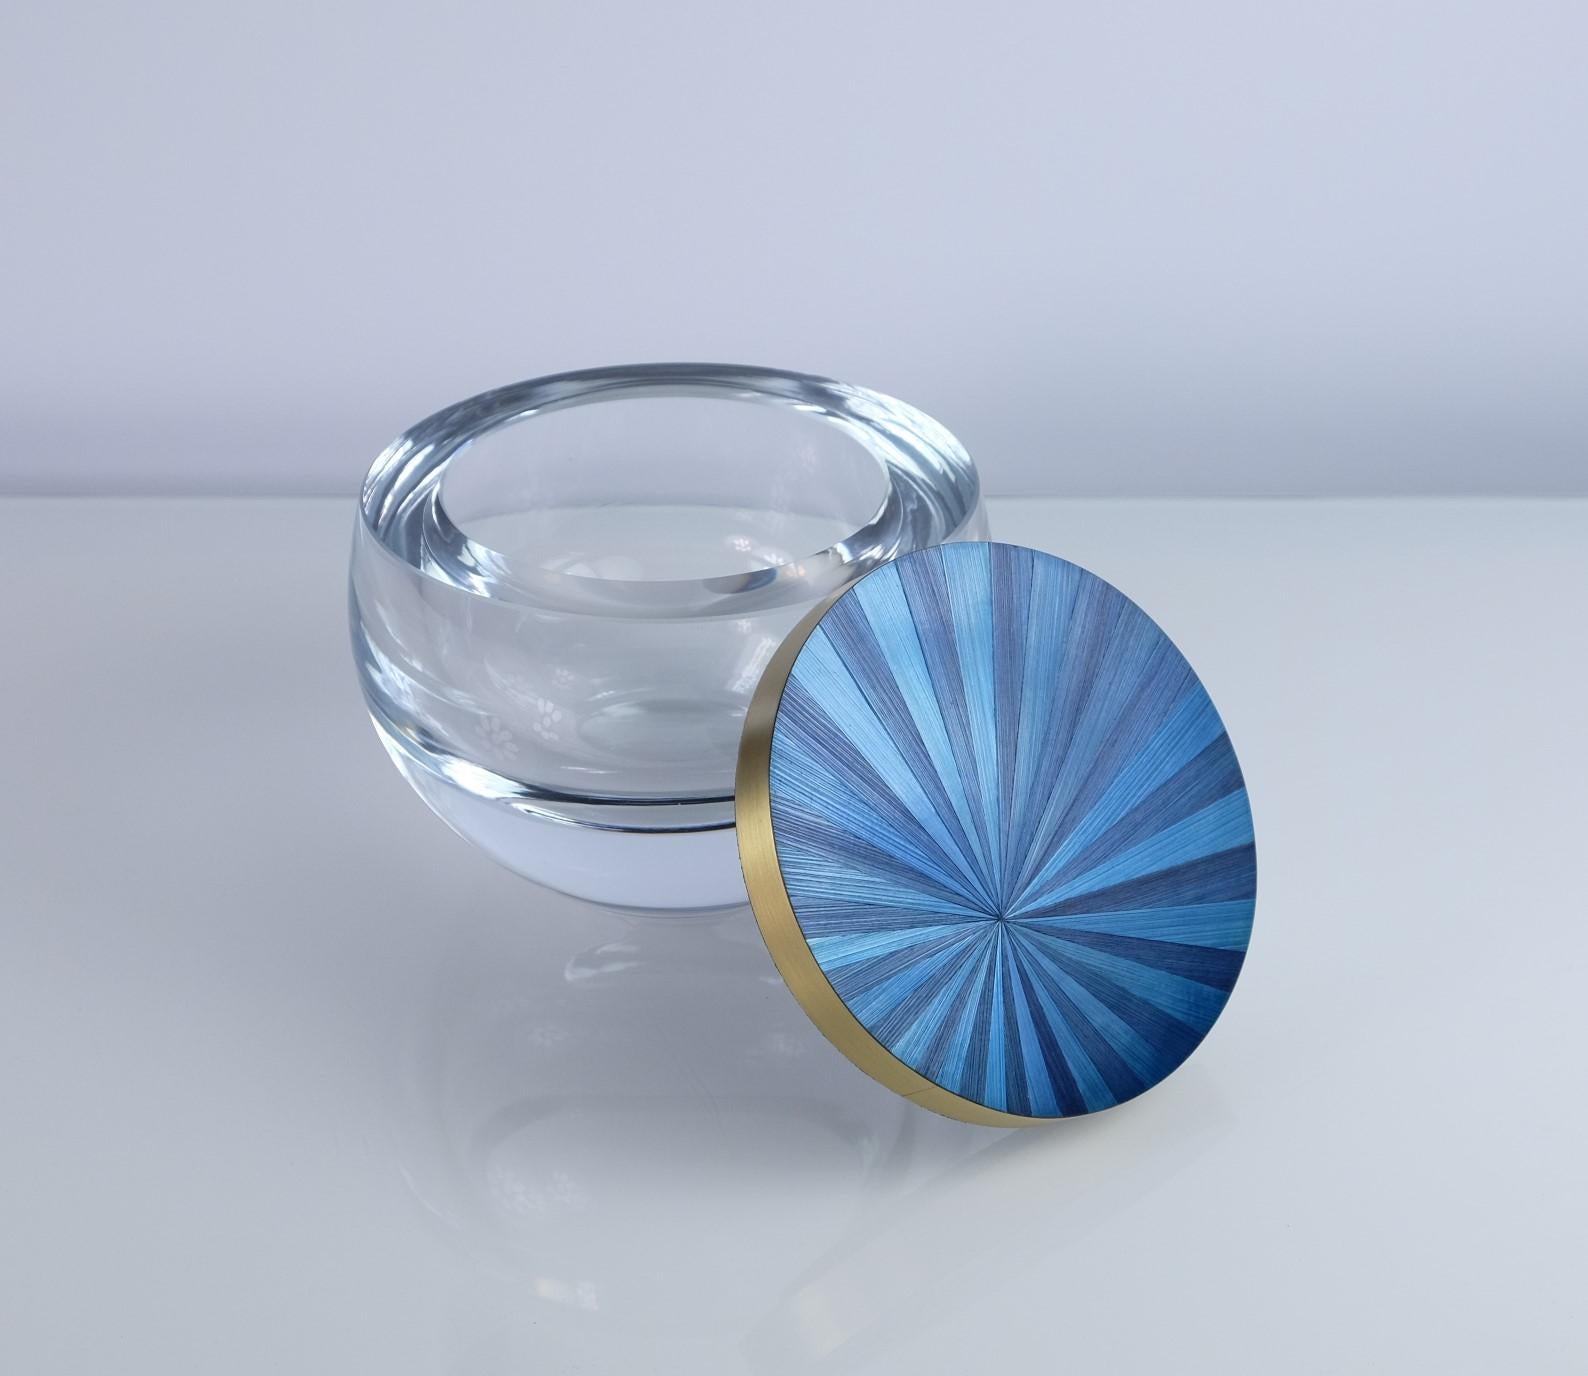 Diese runde Glasschachtel hat einen Deckel mit einer schönen blauen Strohintarsie, umgeben von gebürsteten Messingzierleisten. 
Das radiale Design des Strohhalms erinnert an die große Zeit des Art déco, während die sehr schicke blaue Farbe perfekt